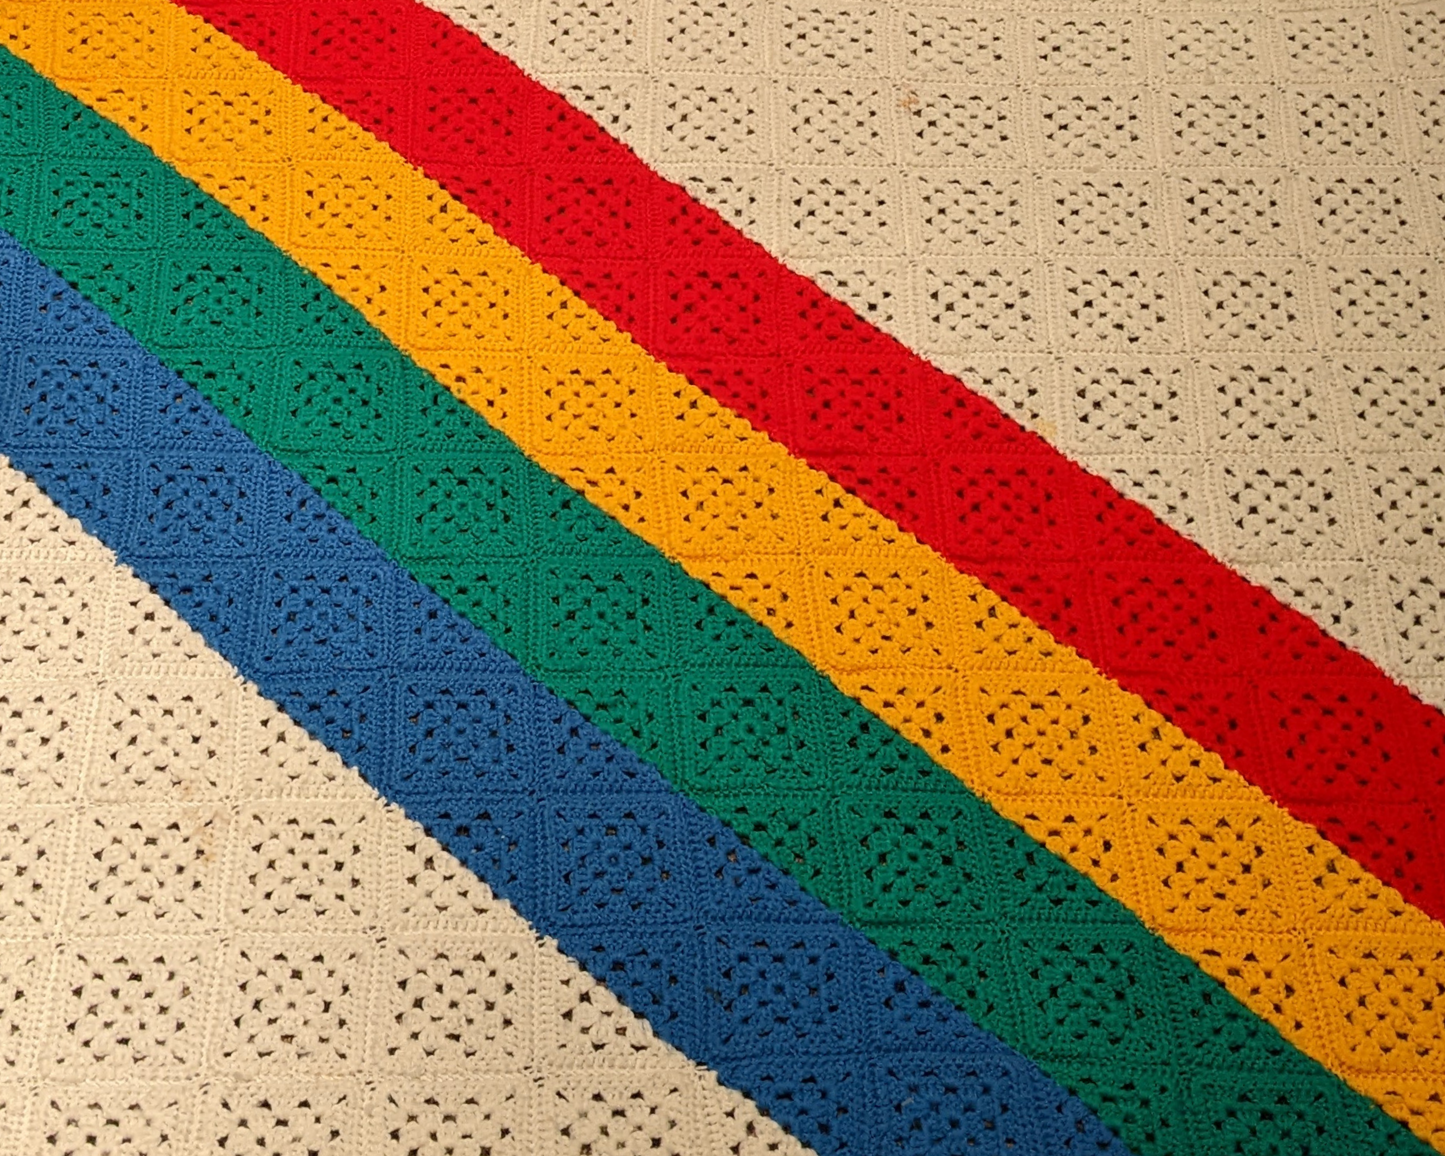 Couverture au crochet en laine aux couleurs arc-en-ciel des années 1970